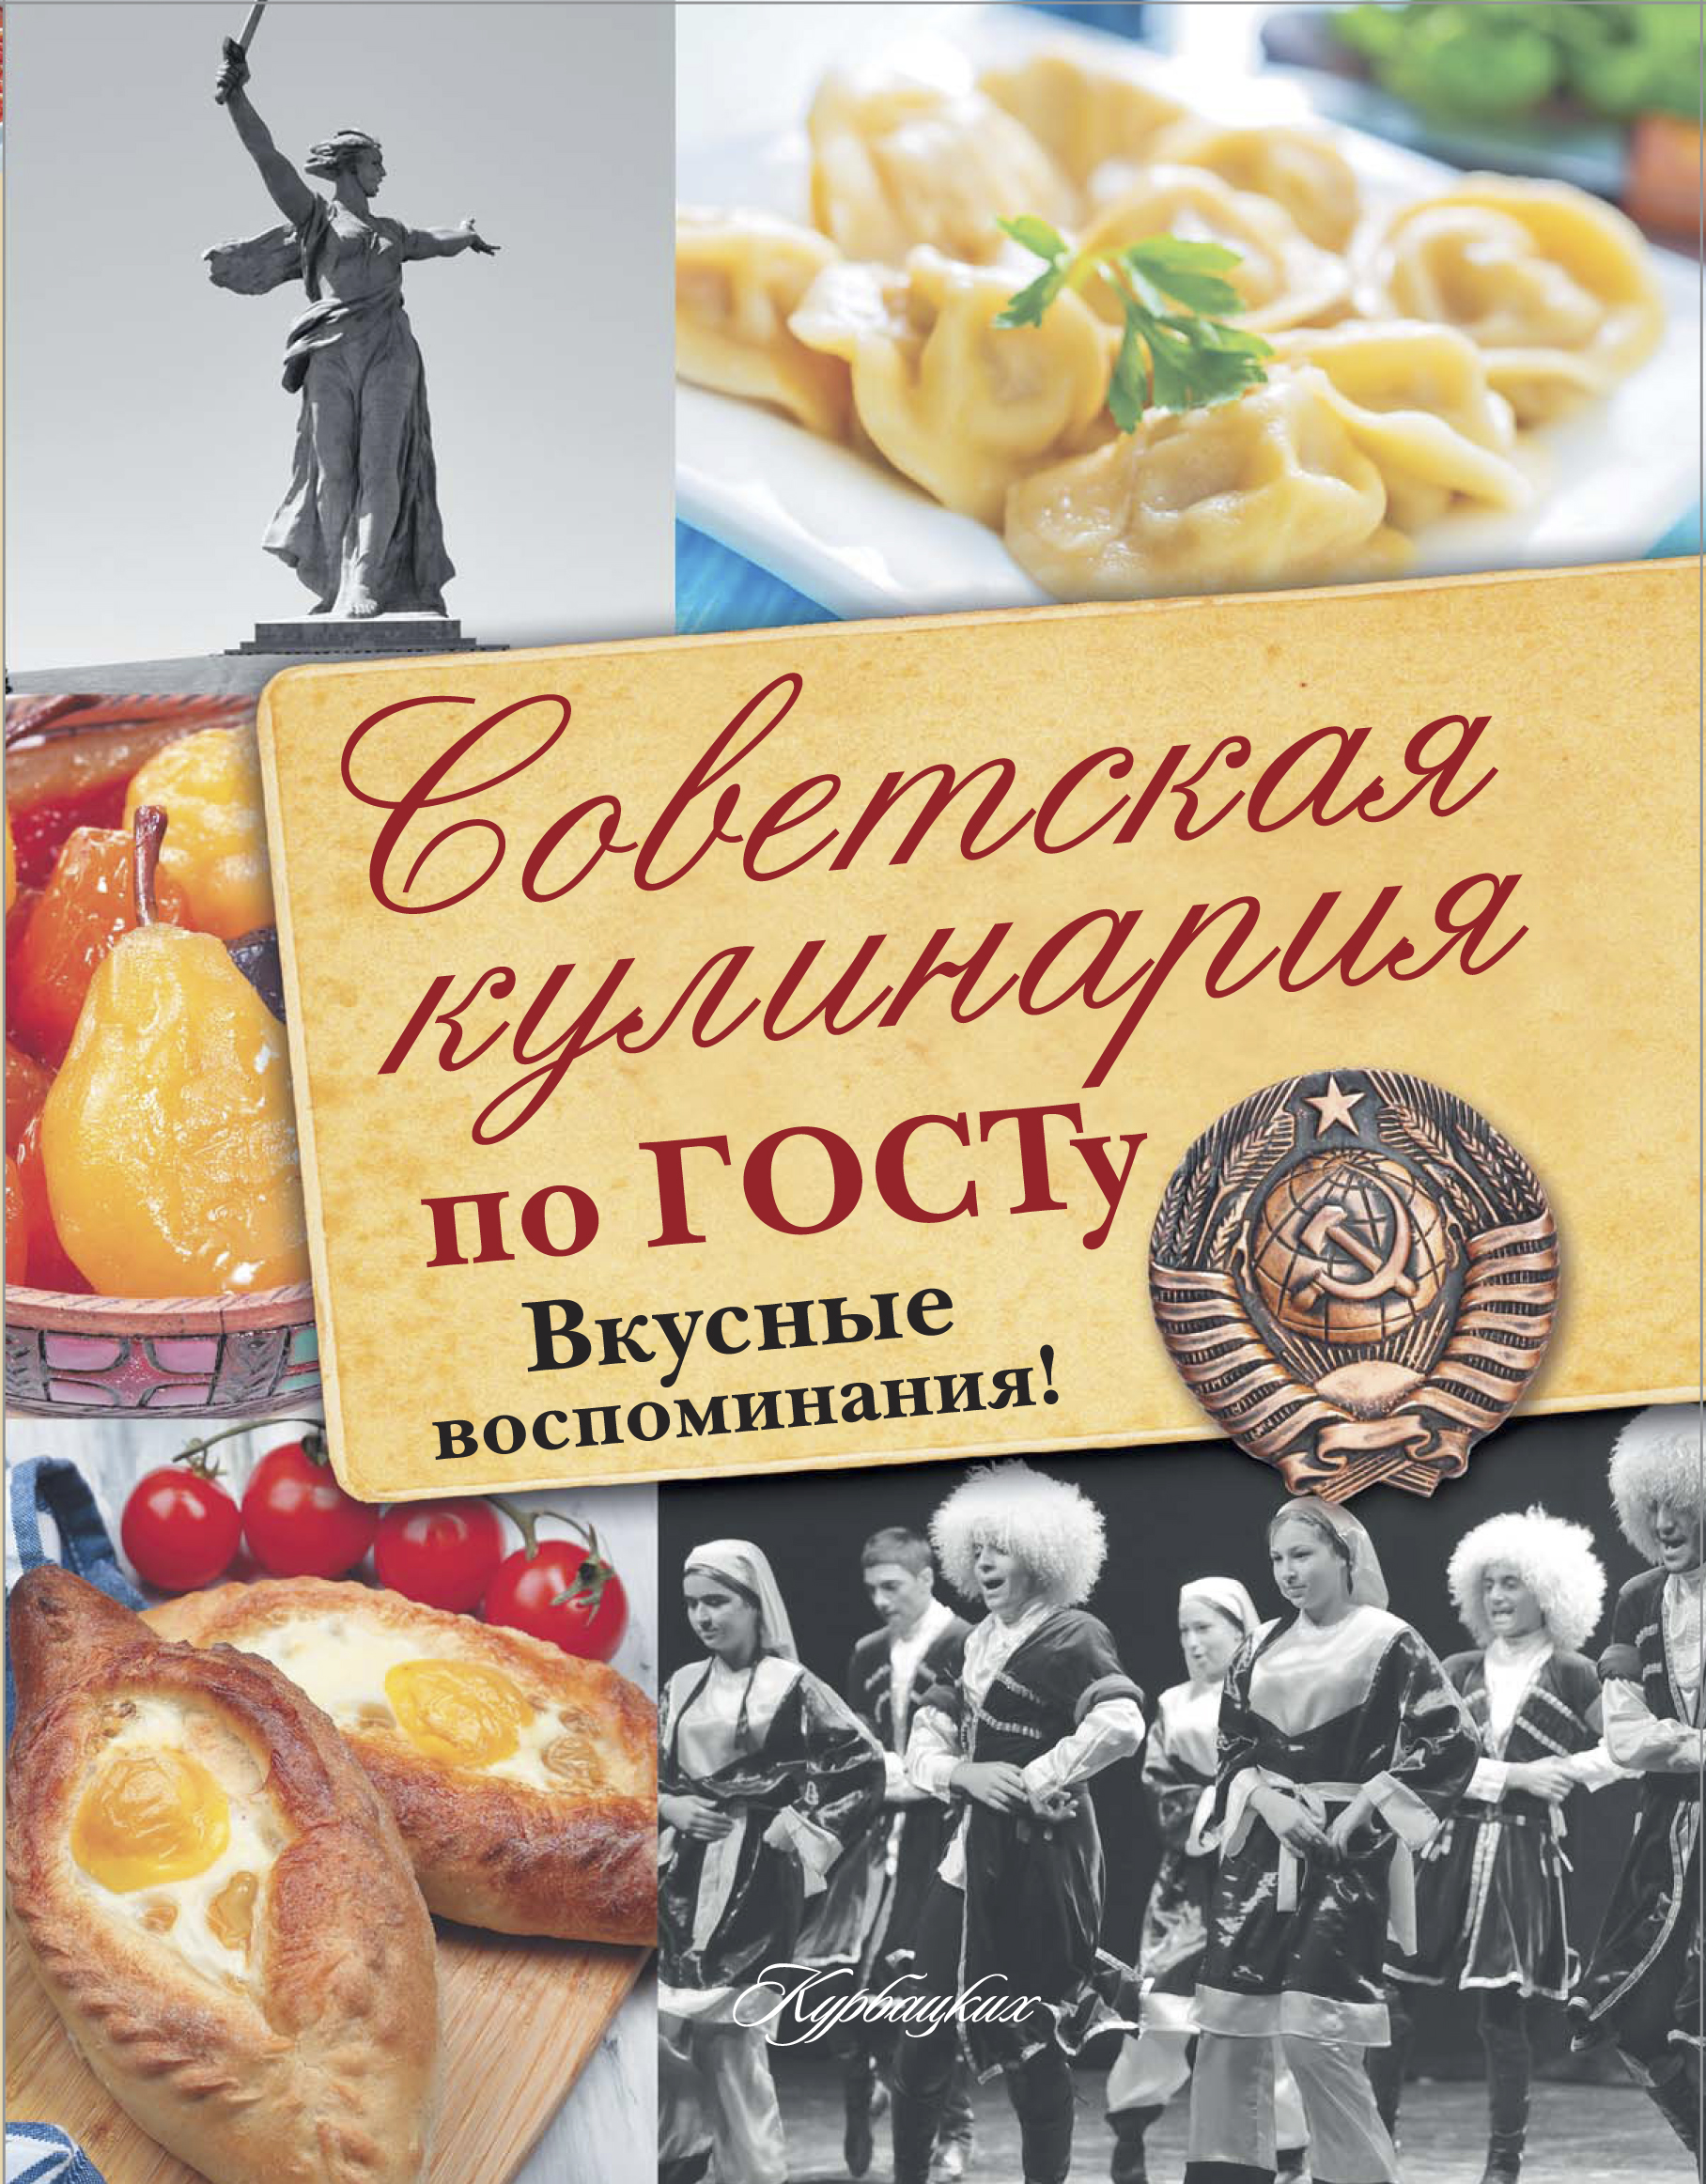  Советская кулинария по ГОСТу. Вкусные воспоминания! - страница 0